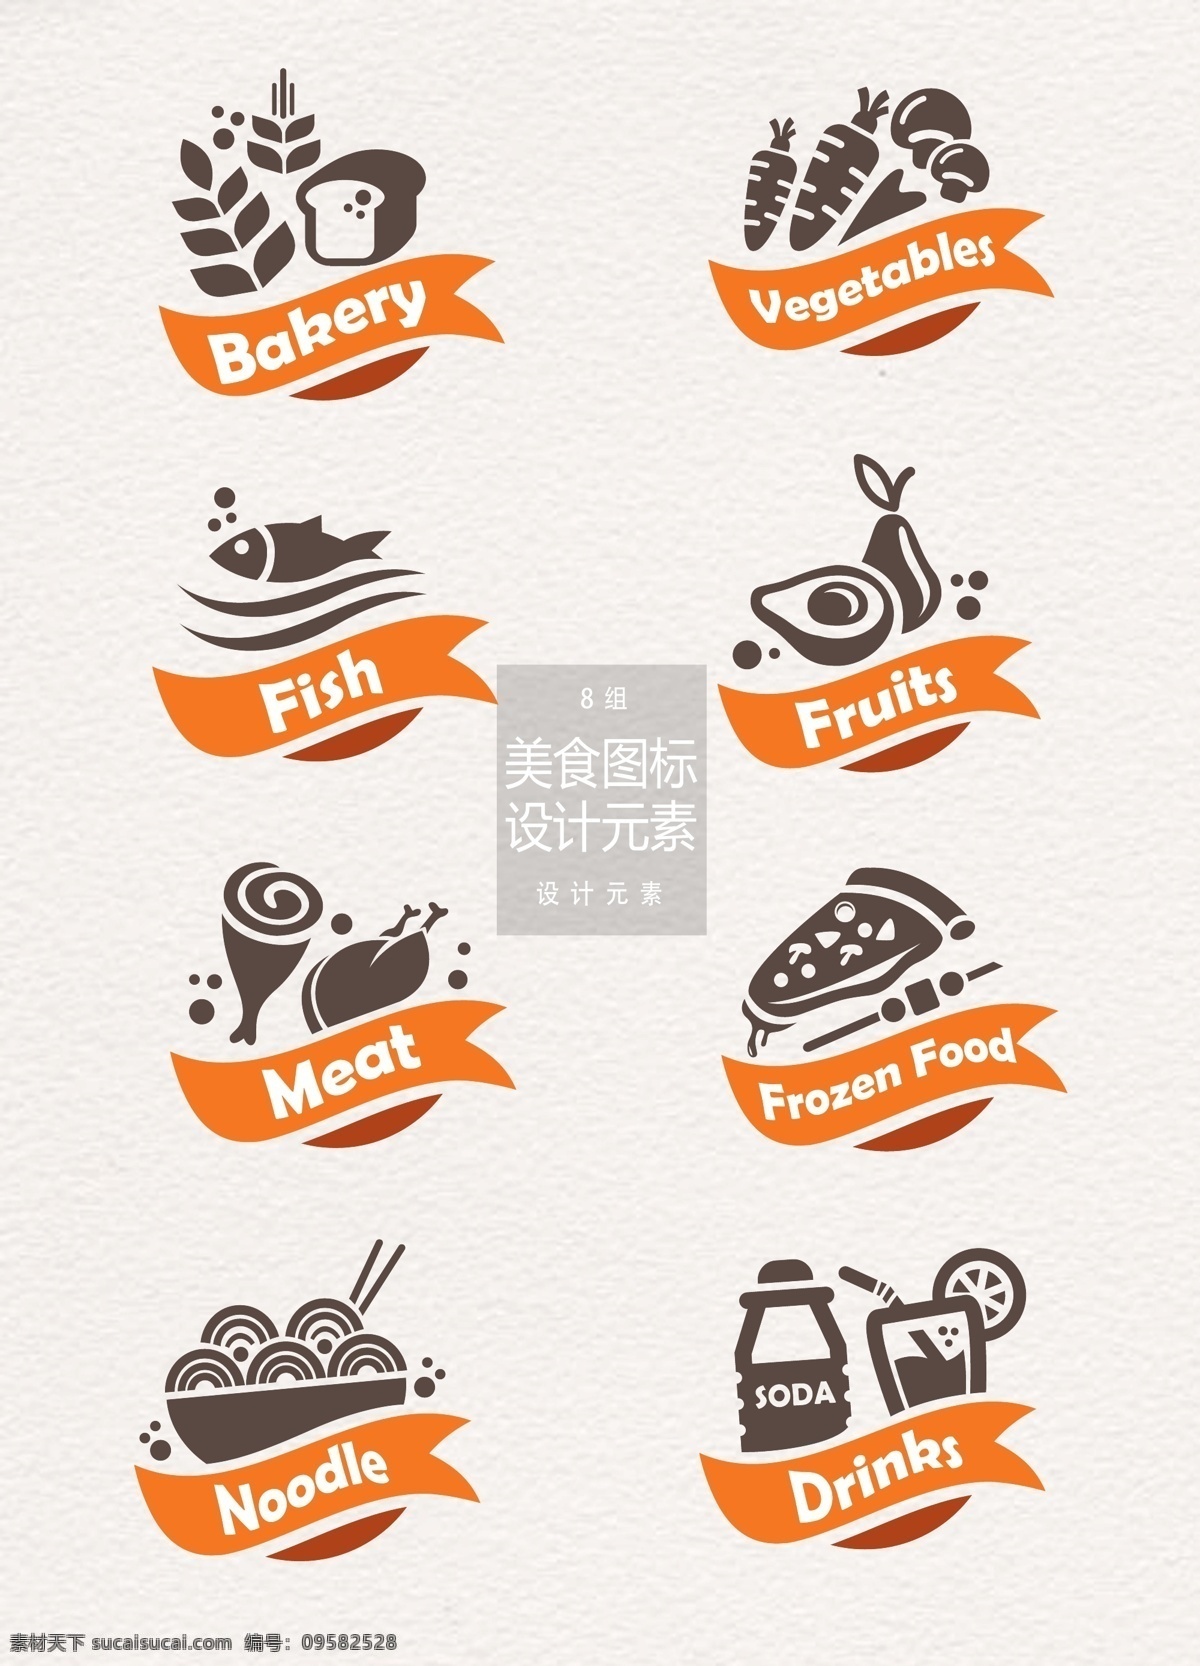 美食 图标 元素 海鲜 丝带 面包 蔬菜 美食图标 设计元素 食物 鱼 萝卜 面条 汽水 披萨 快餐 鸡蛋 鸡腿